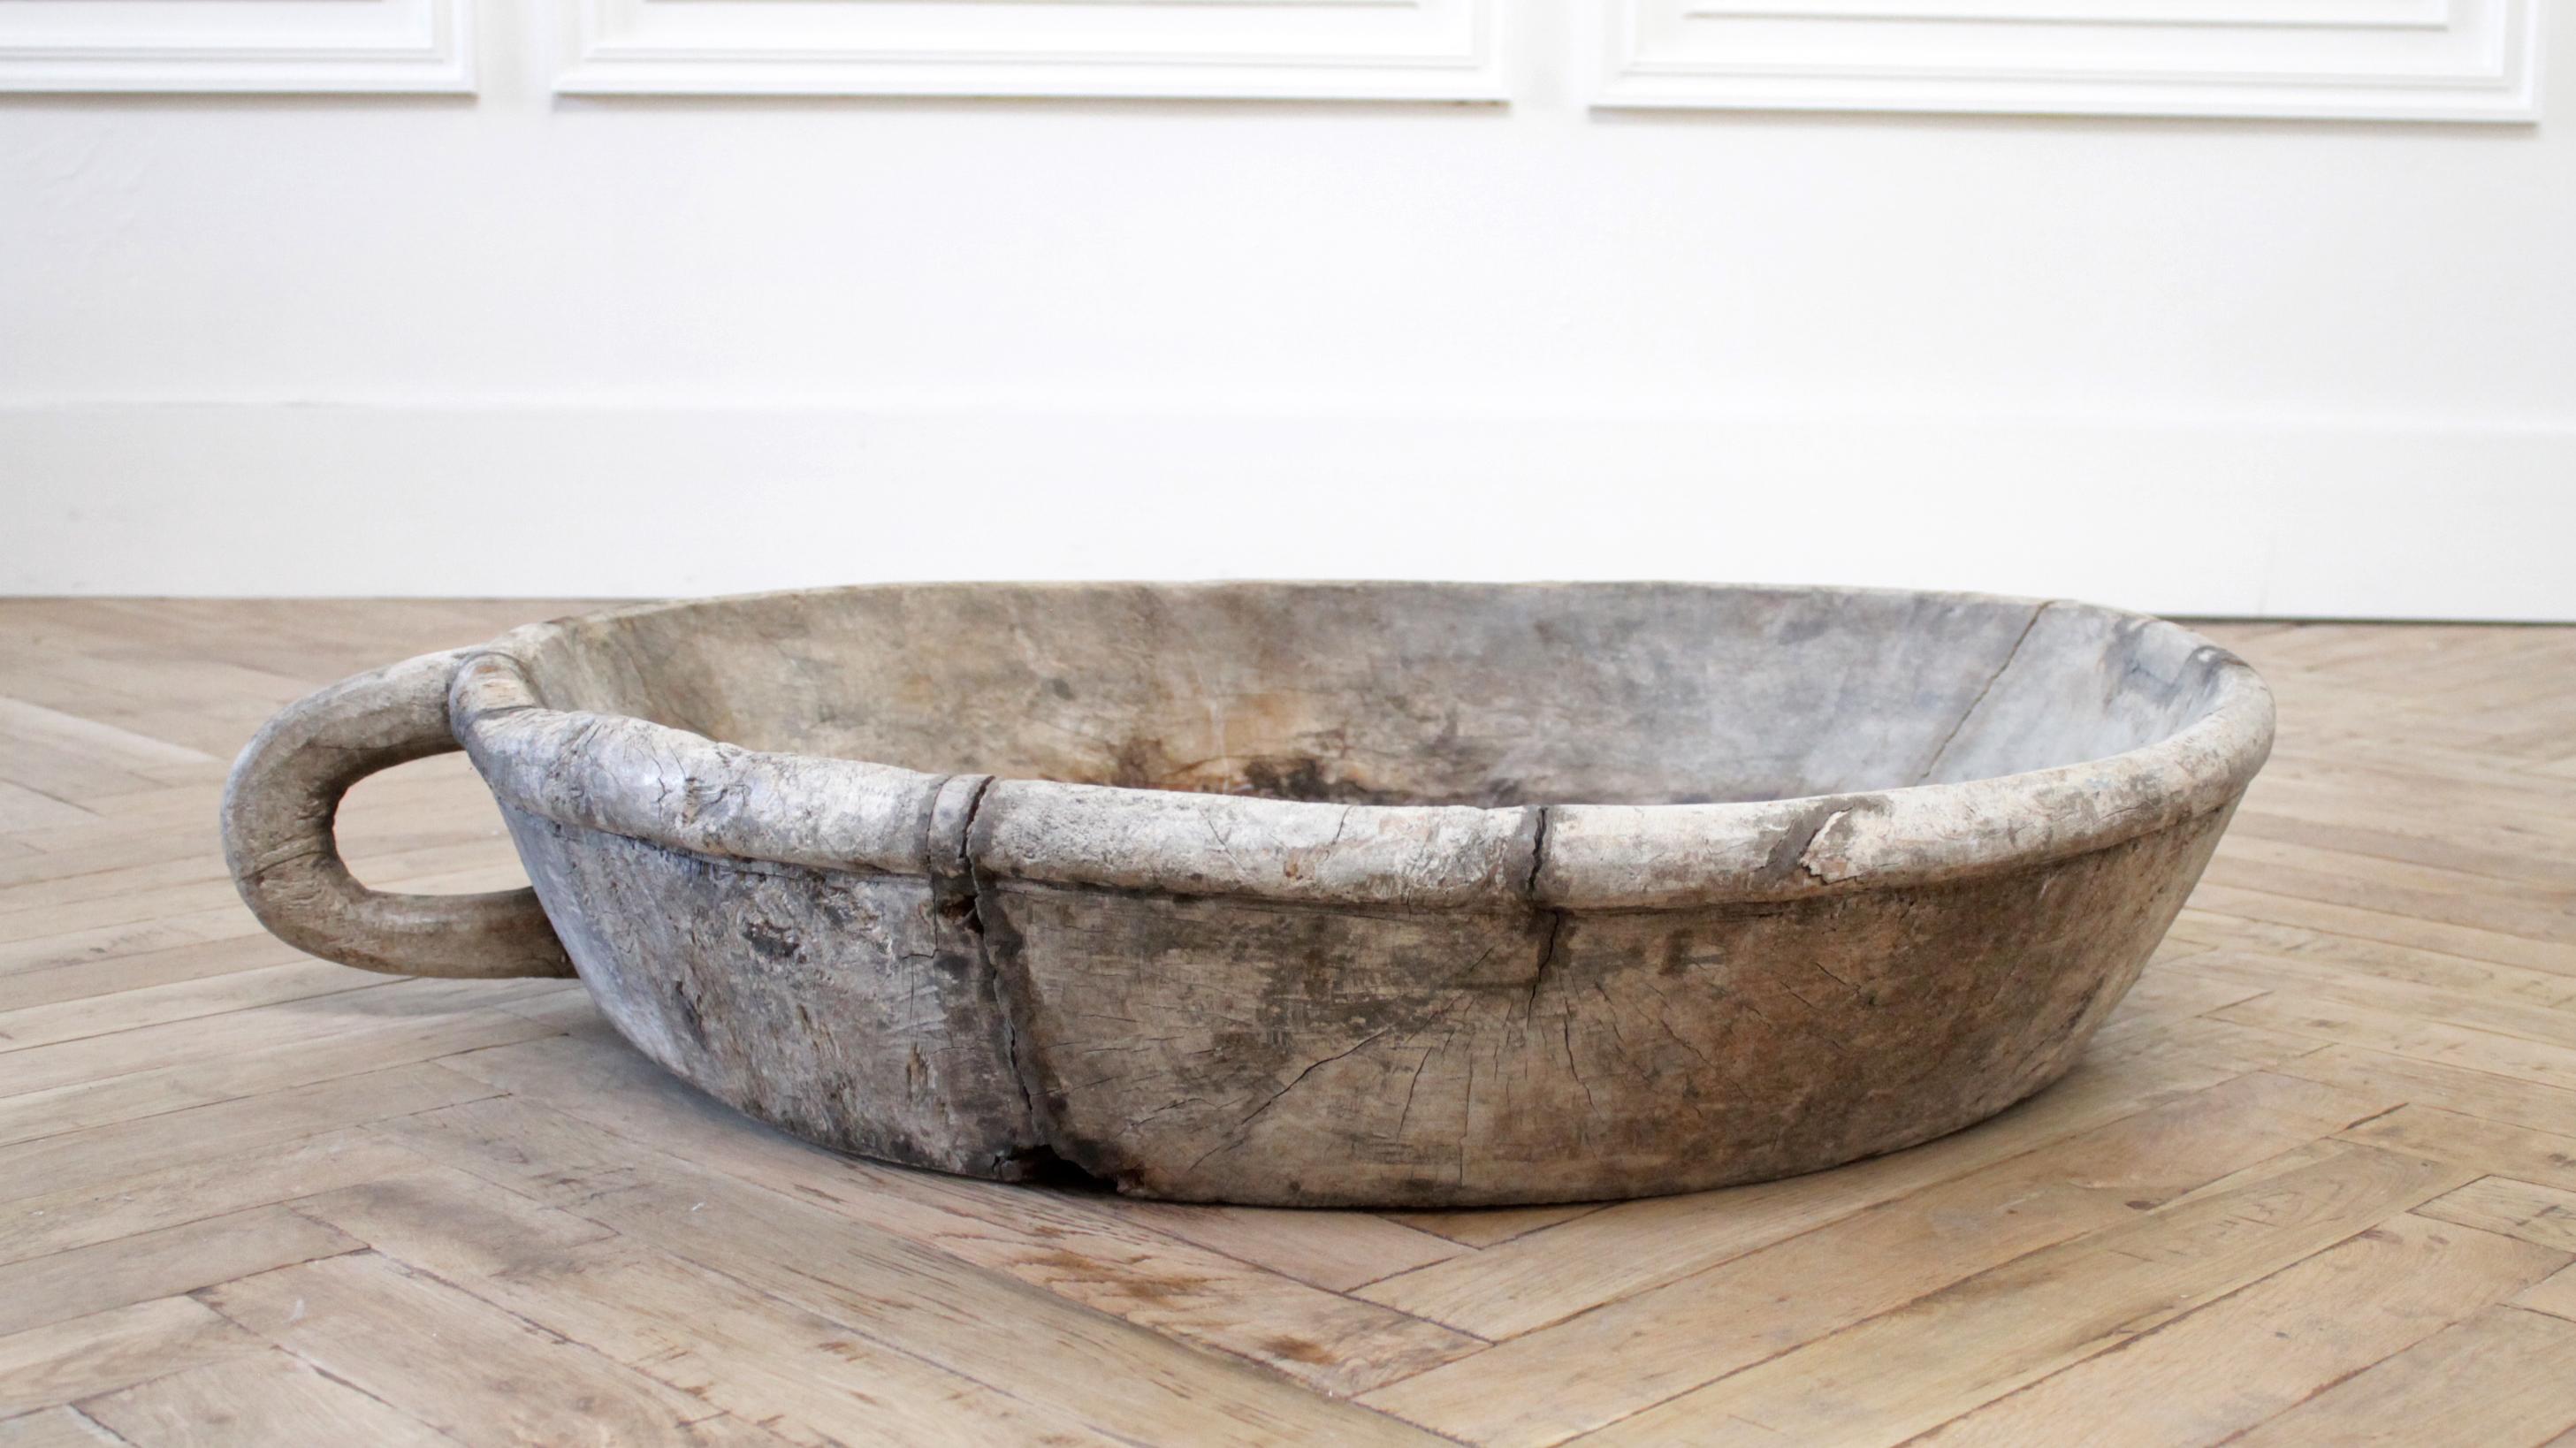 Large rustic antique dough bowl centerpiece
Measures: 34